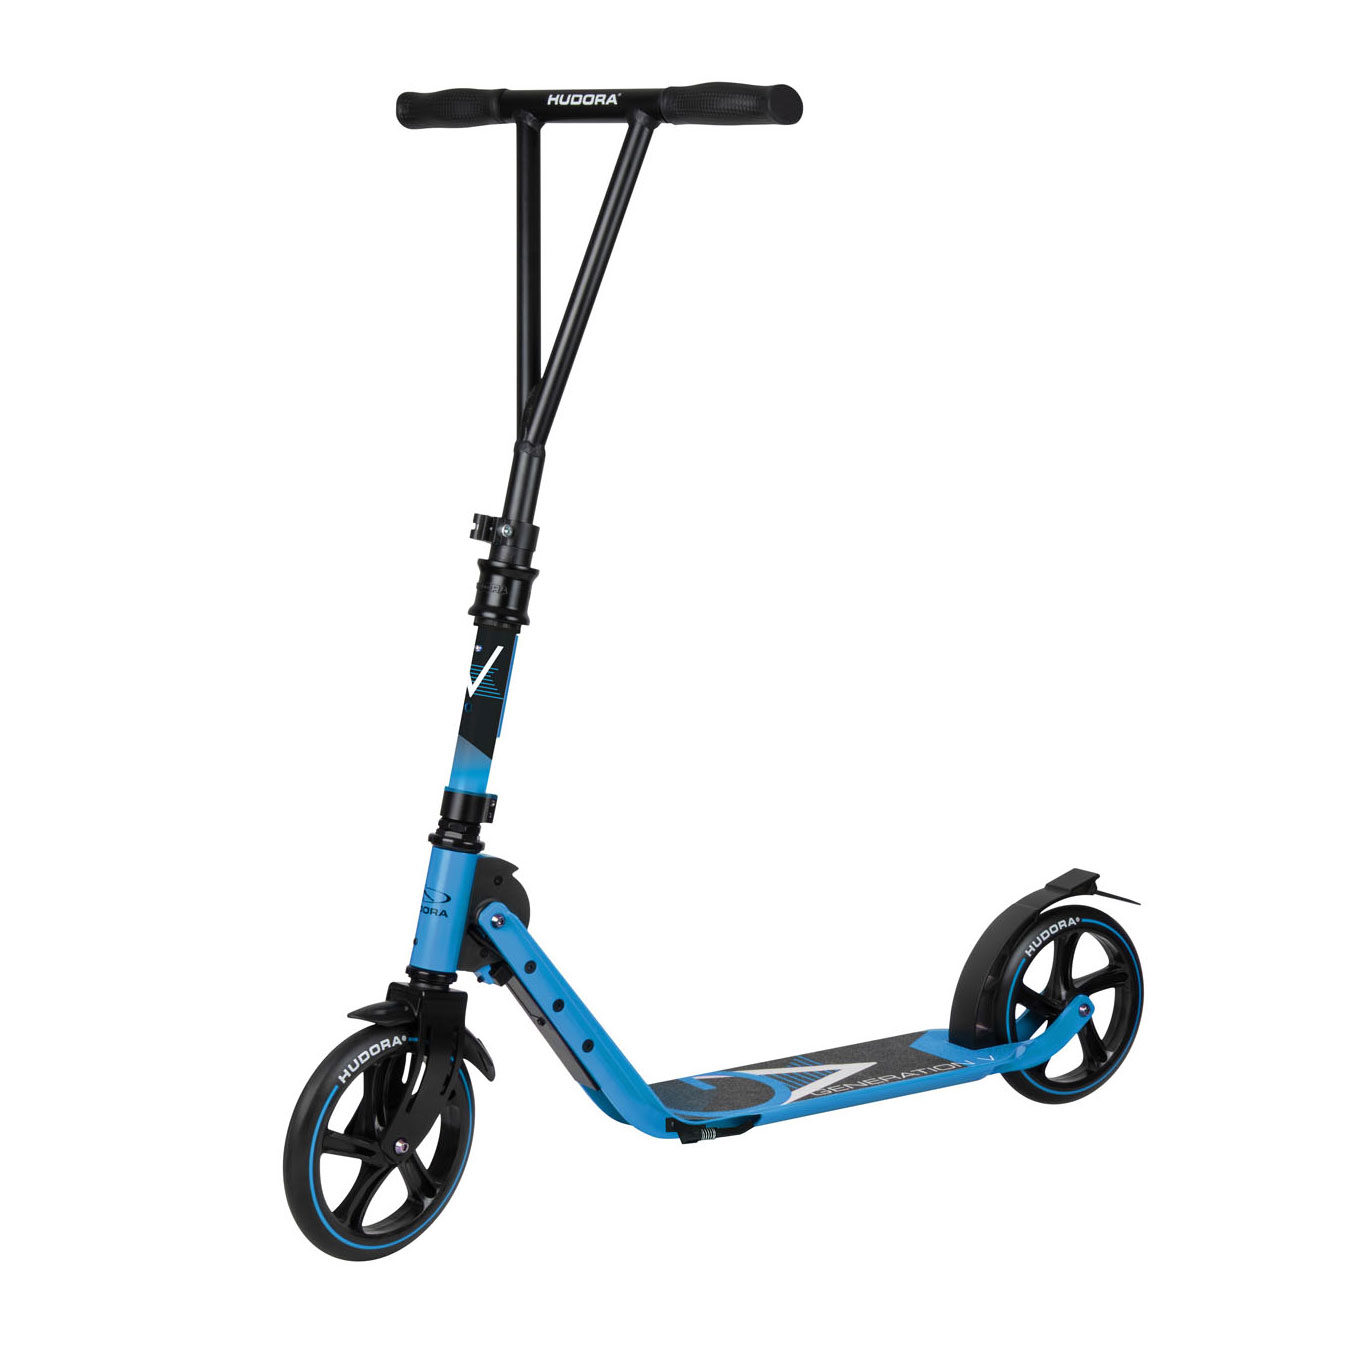 HUDORA BIG Wheel Scooter 205 mit V-förmigem Lenker – Blau